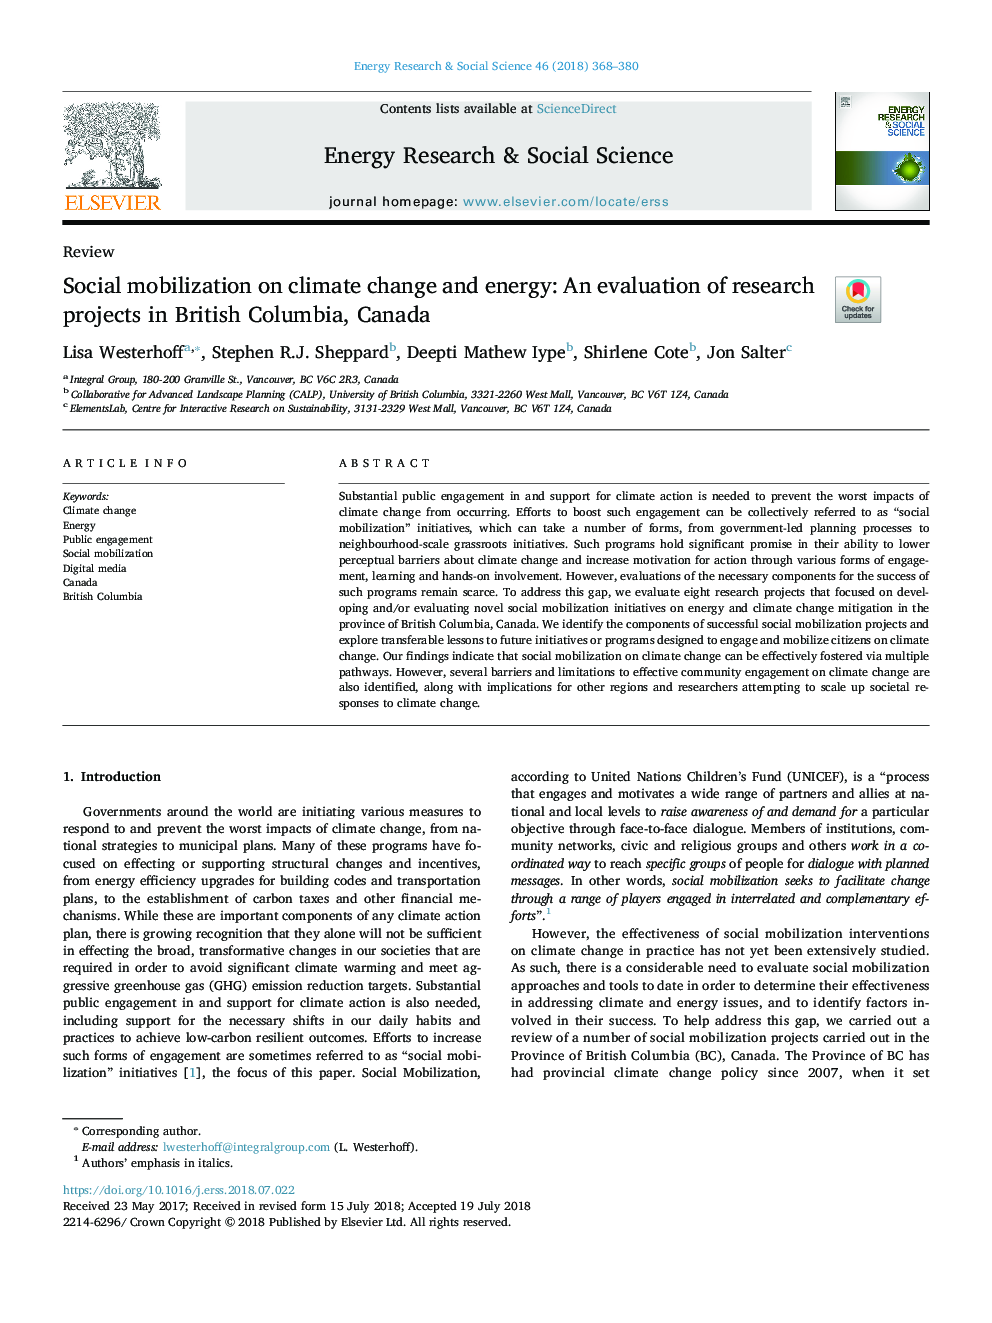 بسیج اجتماعی در مورد تغییرات اقلیمی و انرژی: ارزیابی پروژه های تحقیقاتی در بریتیش کلمبیا، کانادا